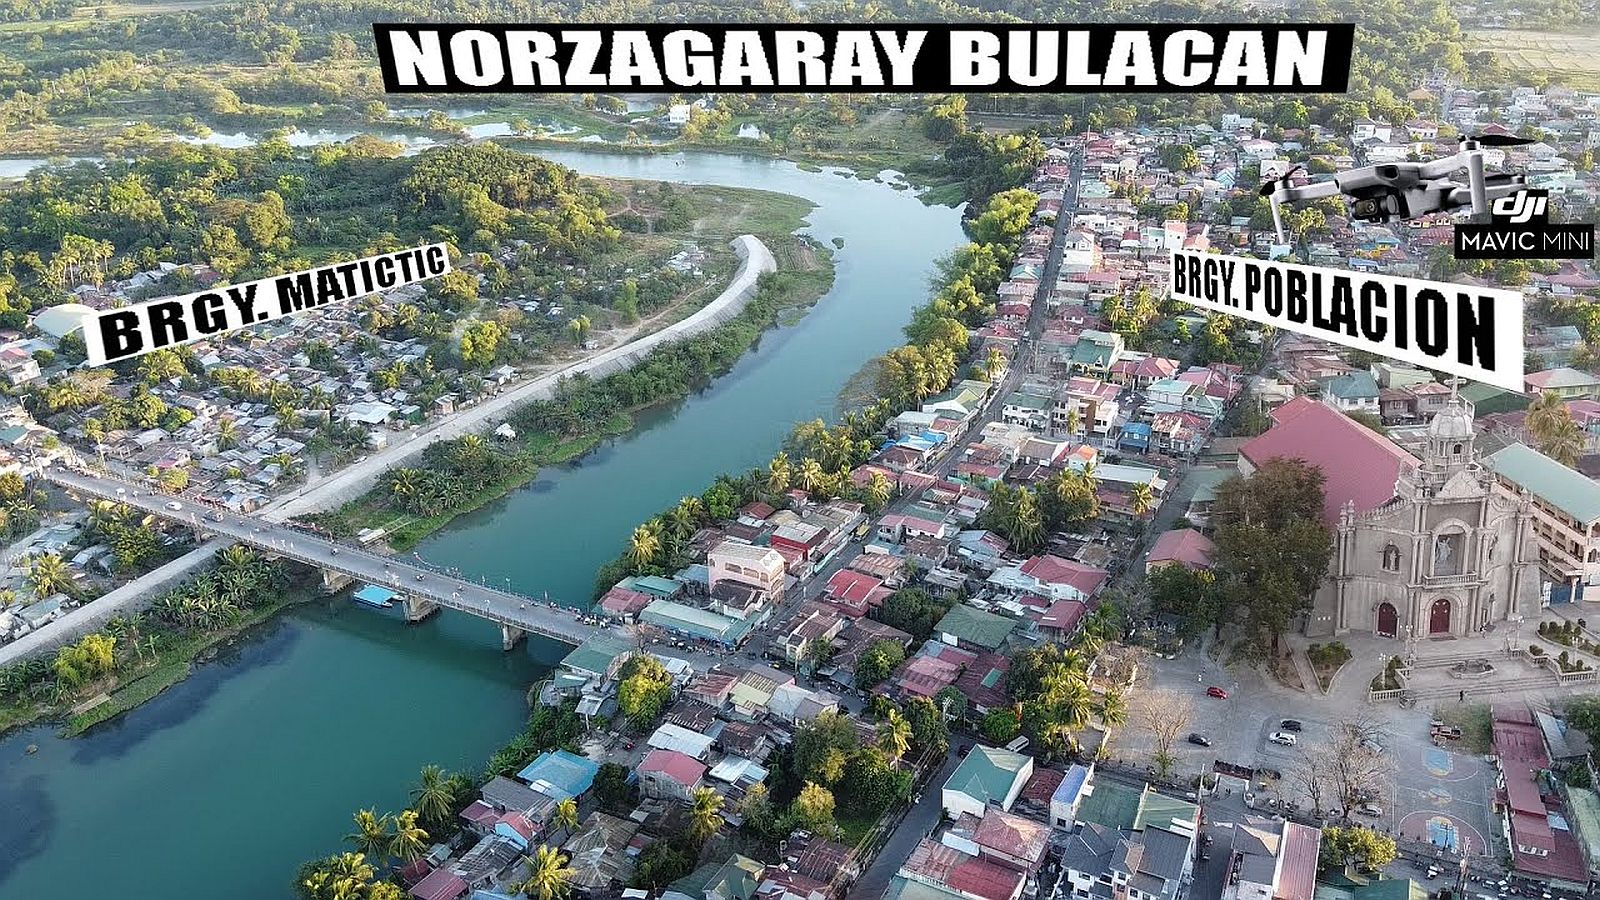 PHILIPPINEN REISEN - ORTE- CENTRAL LUZON - BULACAN - Norzagaray